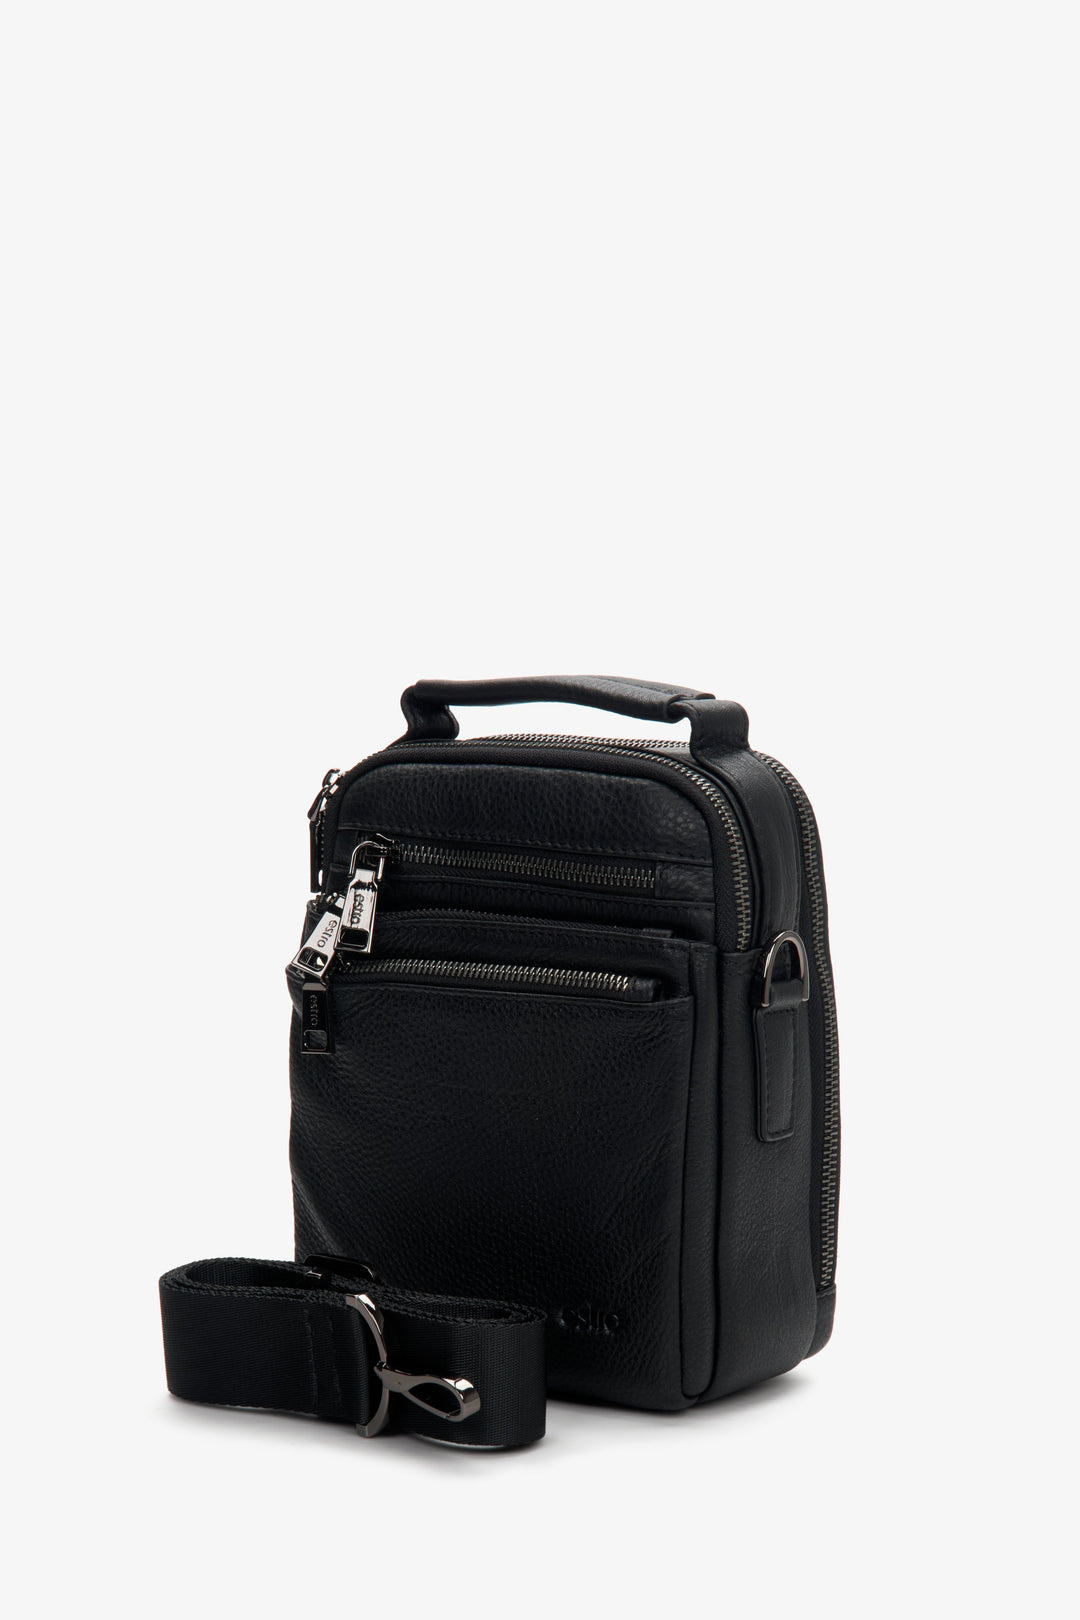 Men's leather black pouch by Estro.